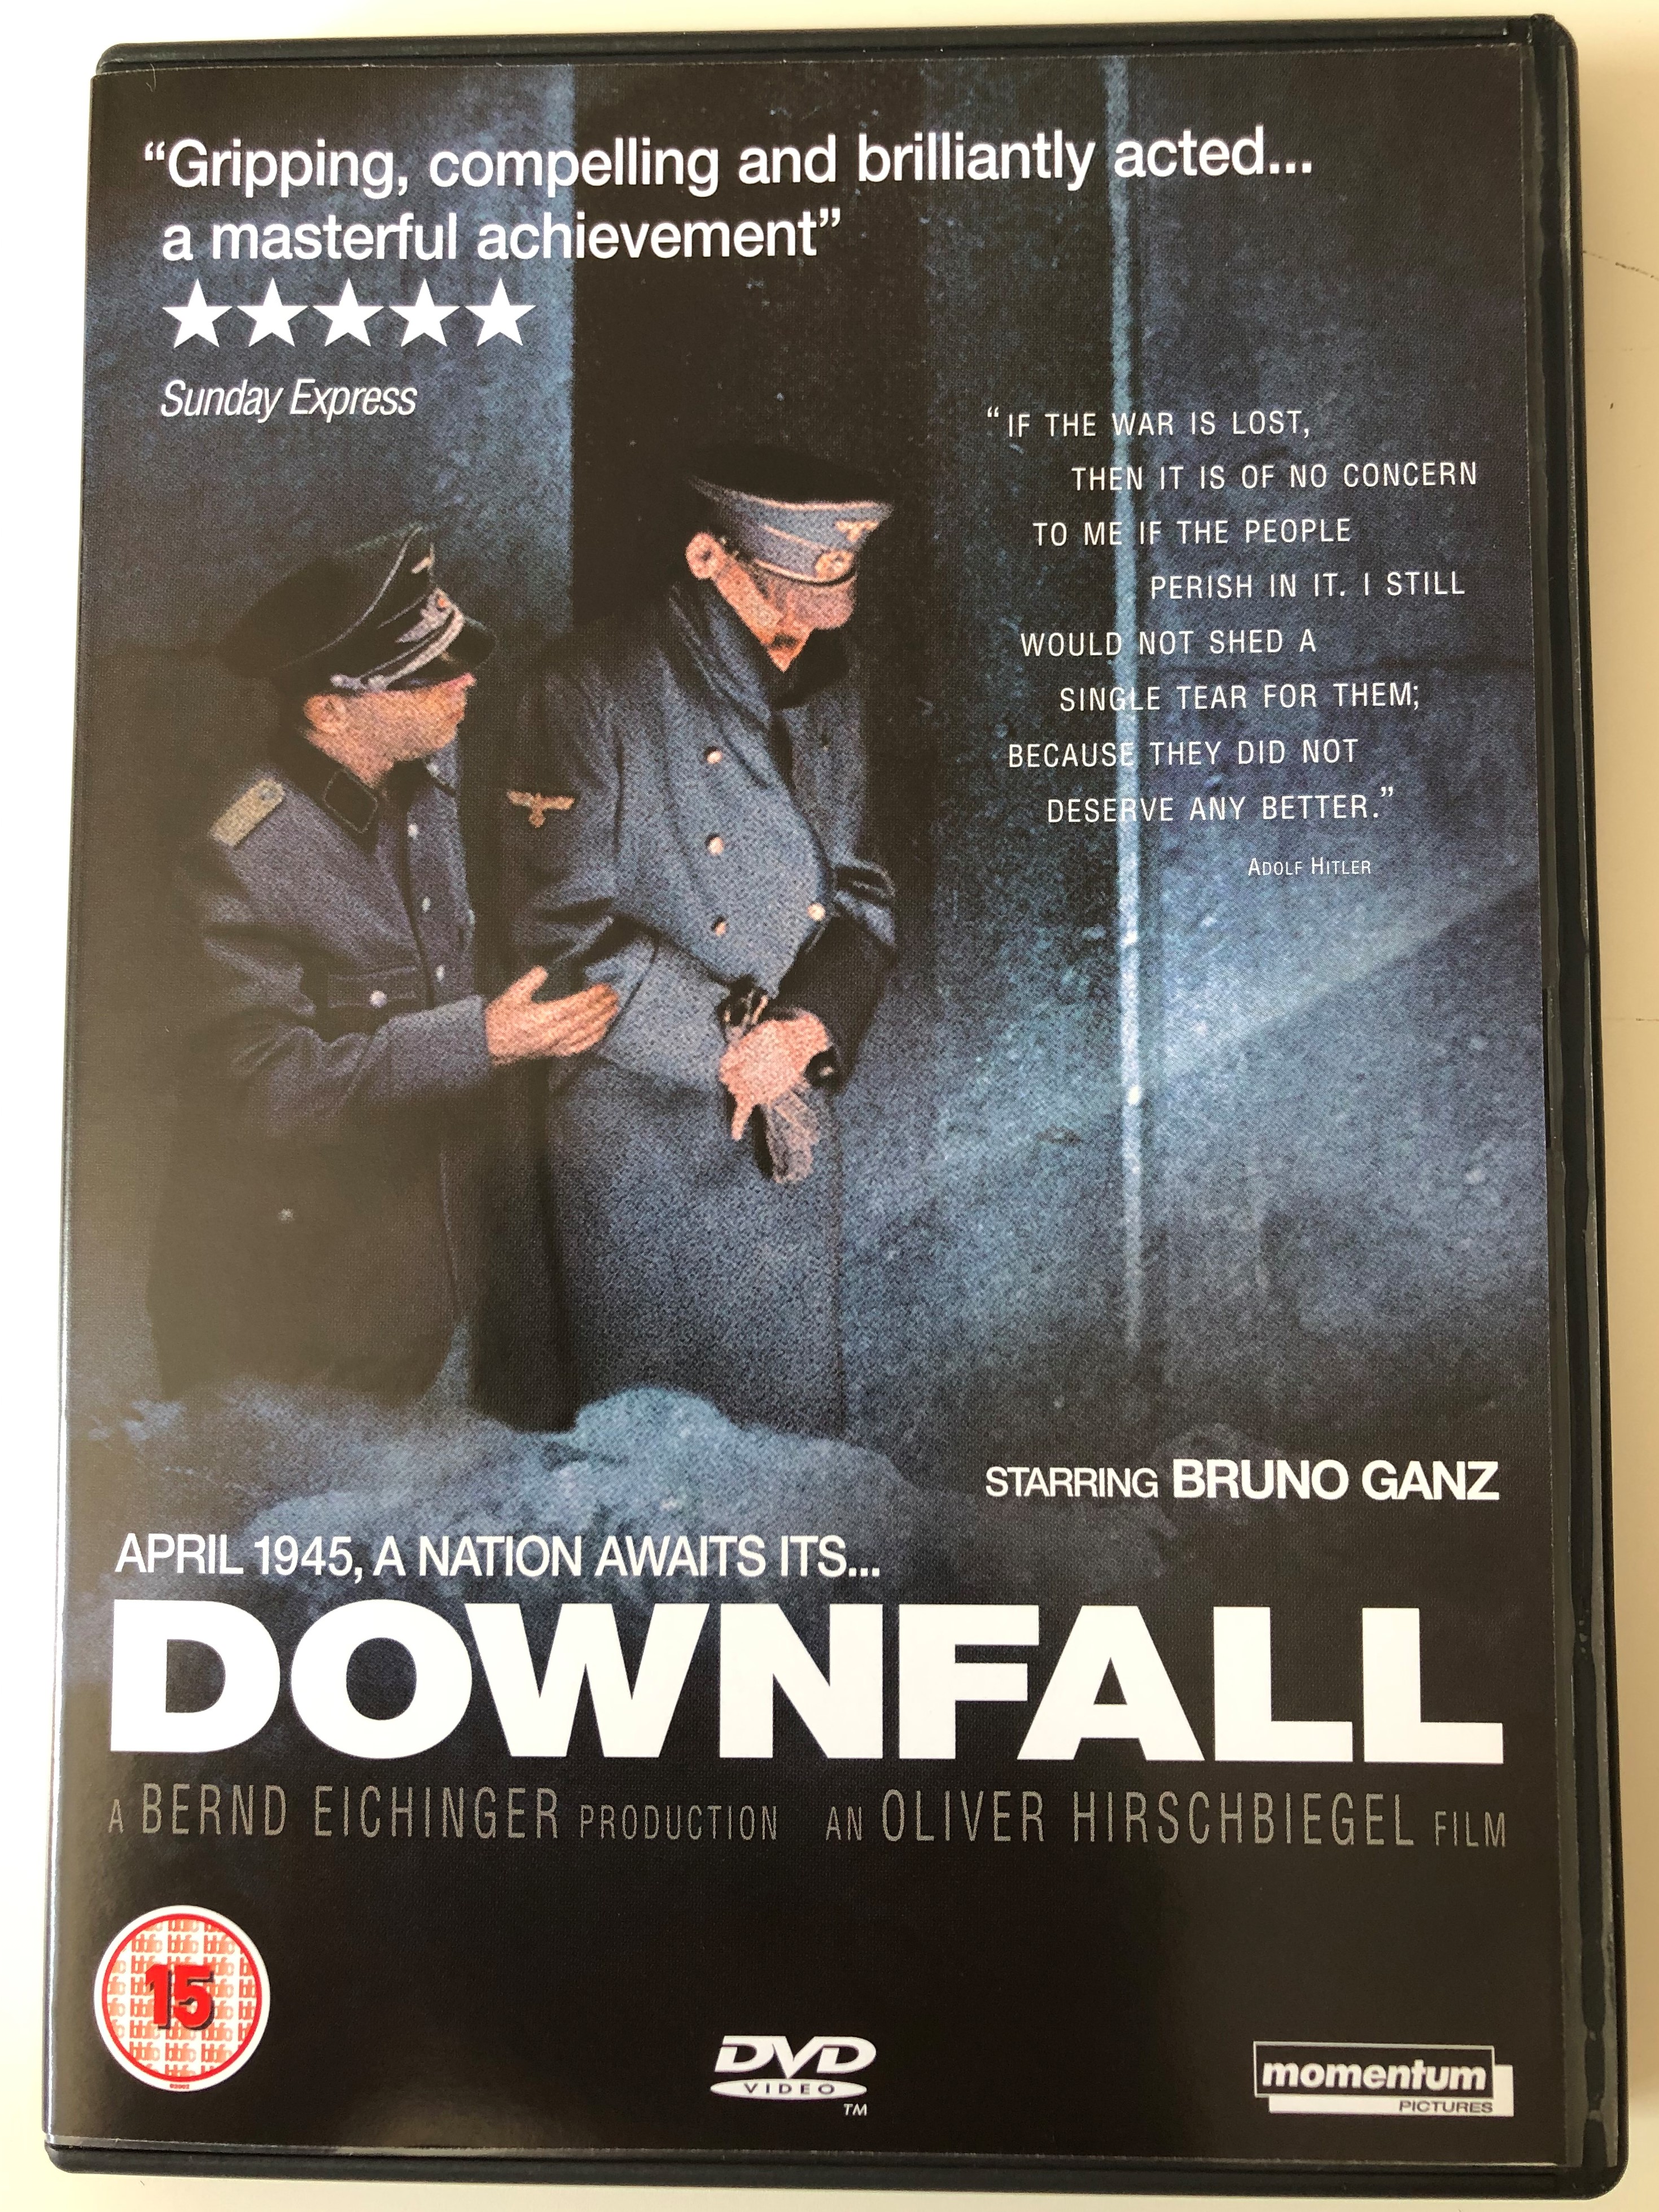 Downfall 2x DVD 2004 Der Untergang / Directed by Oliver Hirschbiegel /  Starring: Bruno Ganz, Alexandra Maria Lara, Corinna Harfouch, Ulrich  Matthes - bibleinmylanguage